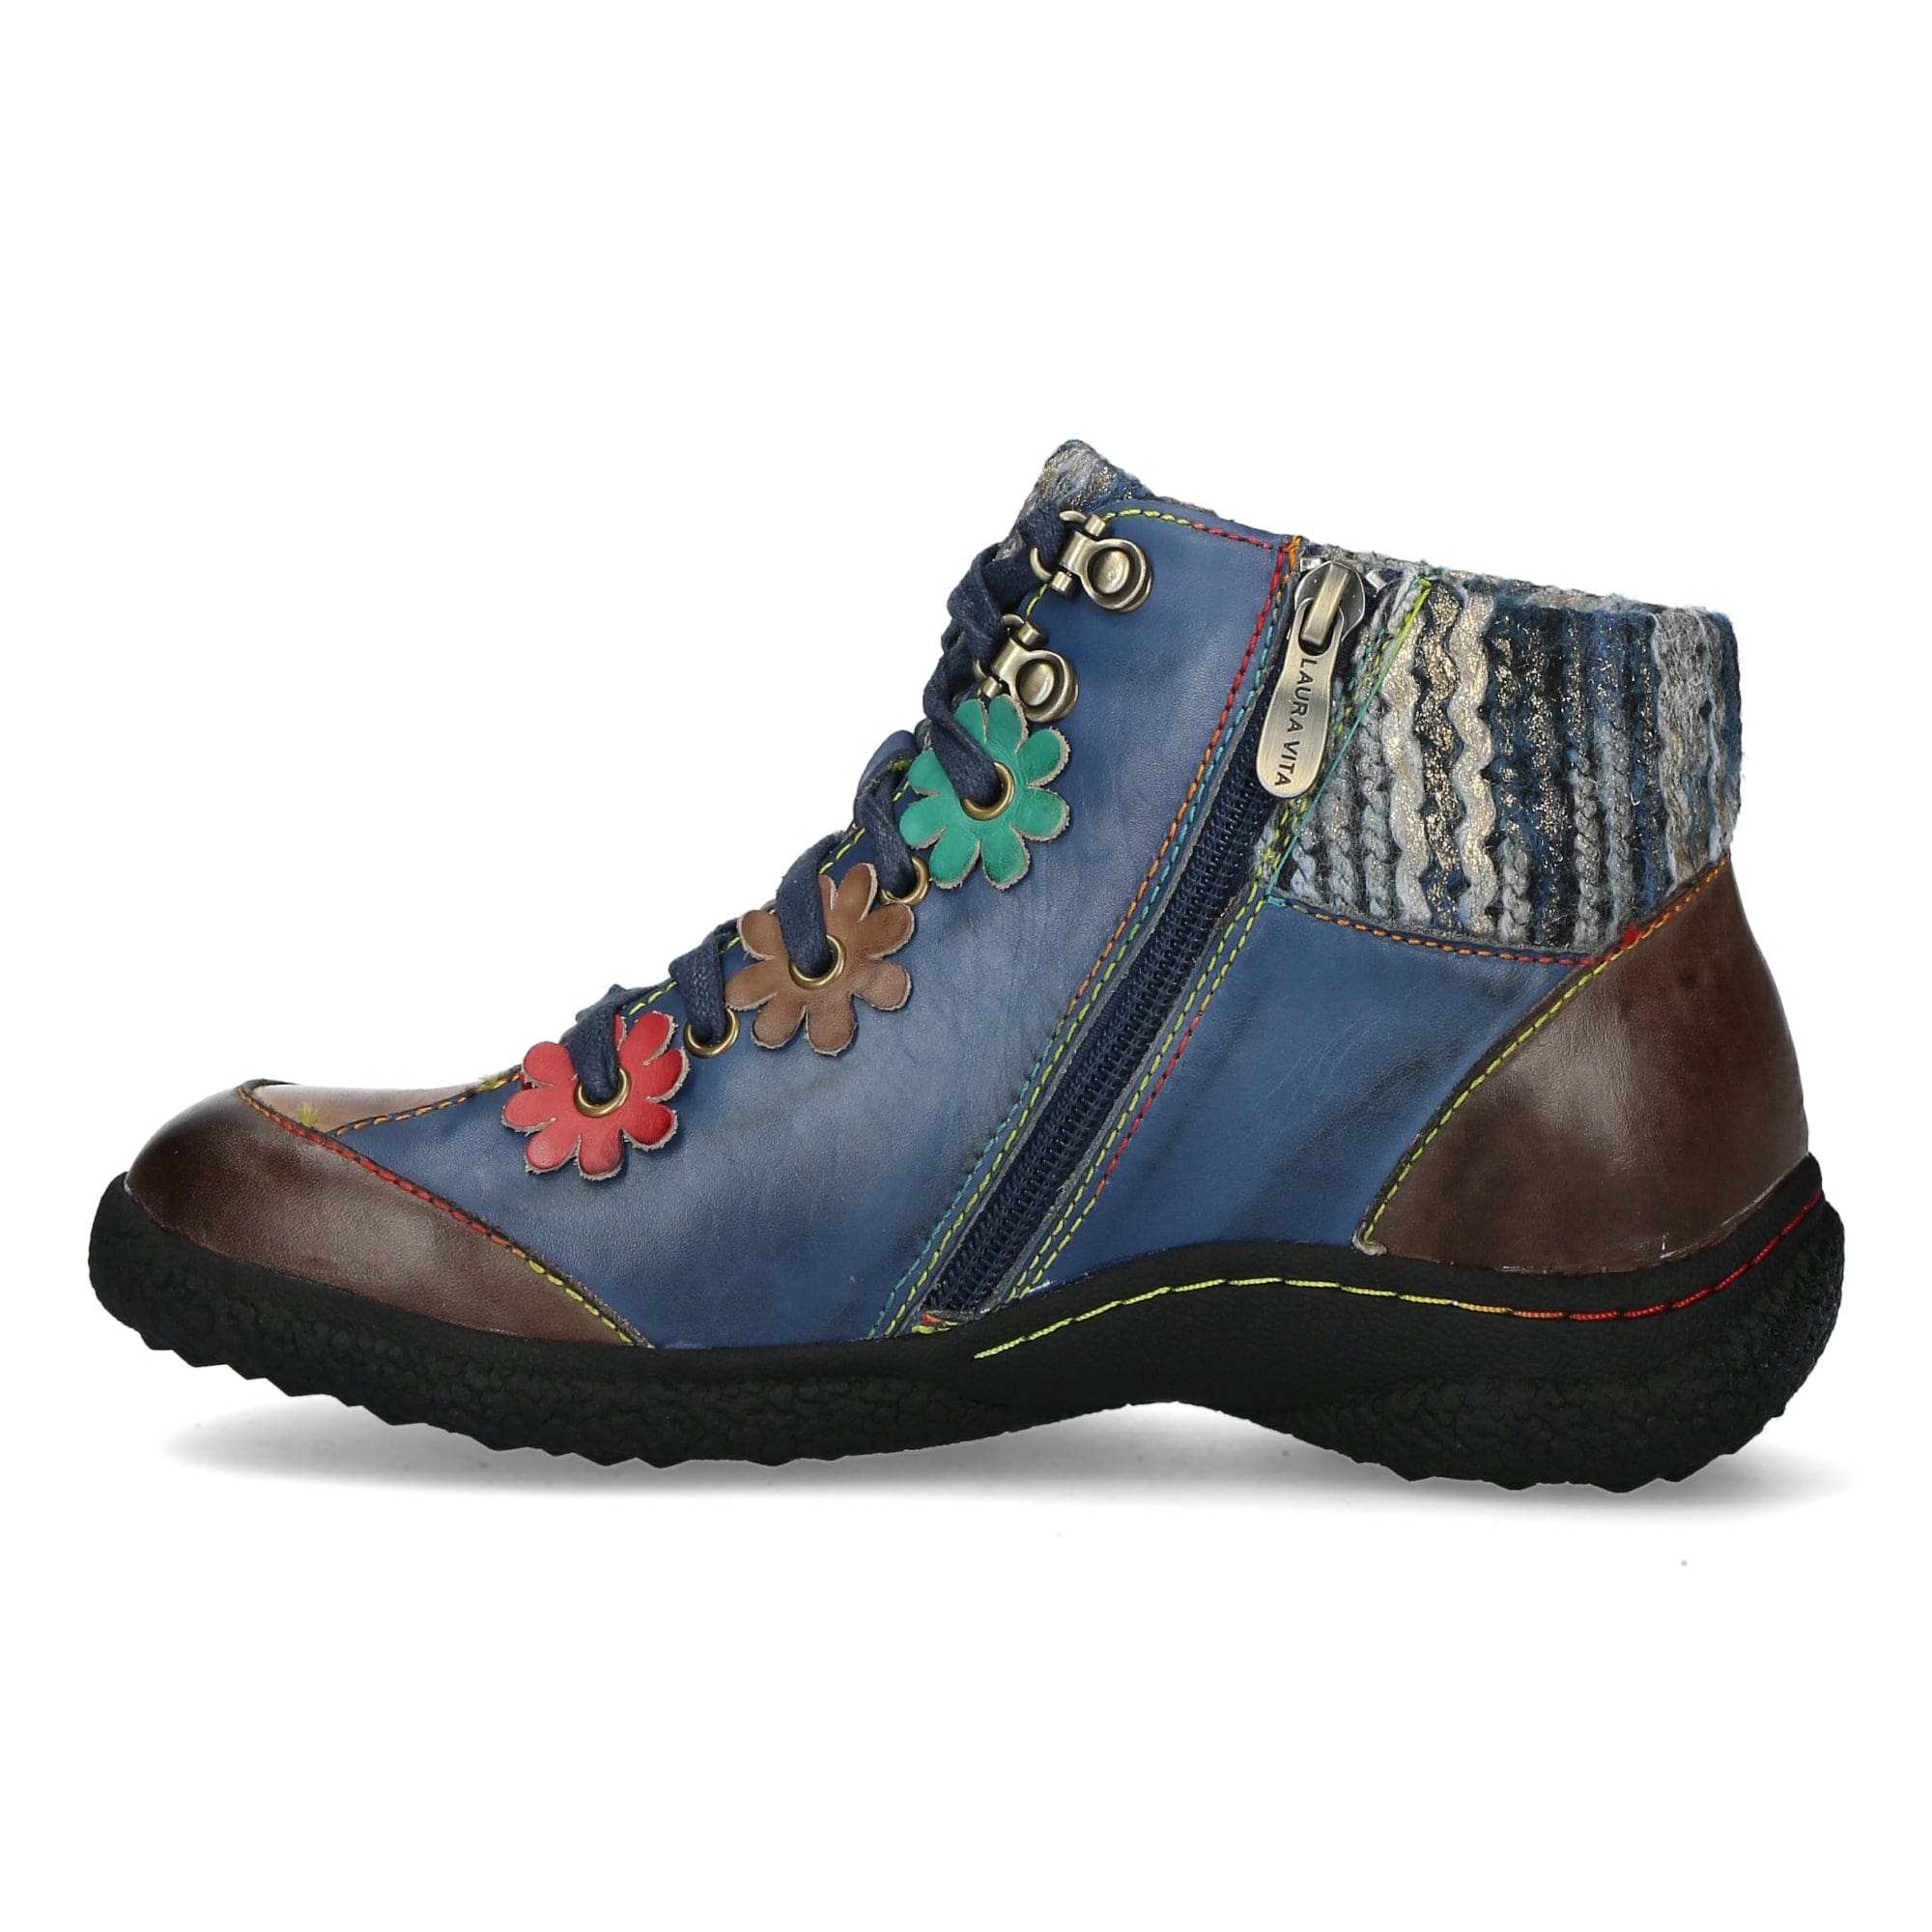 Schuh GOCTHO 13 - Boots